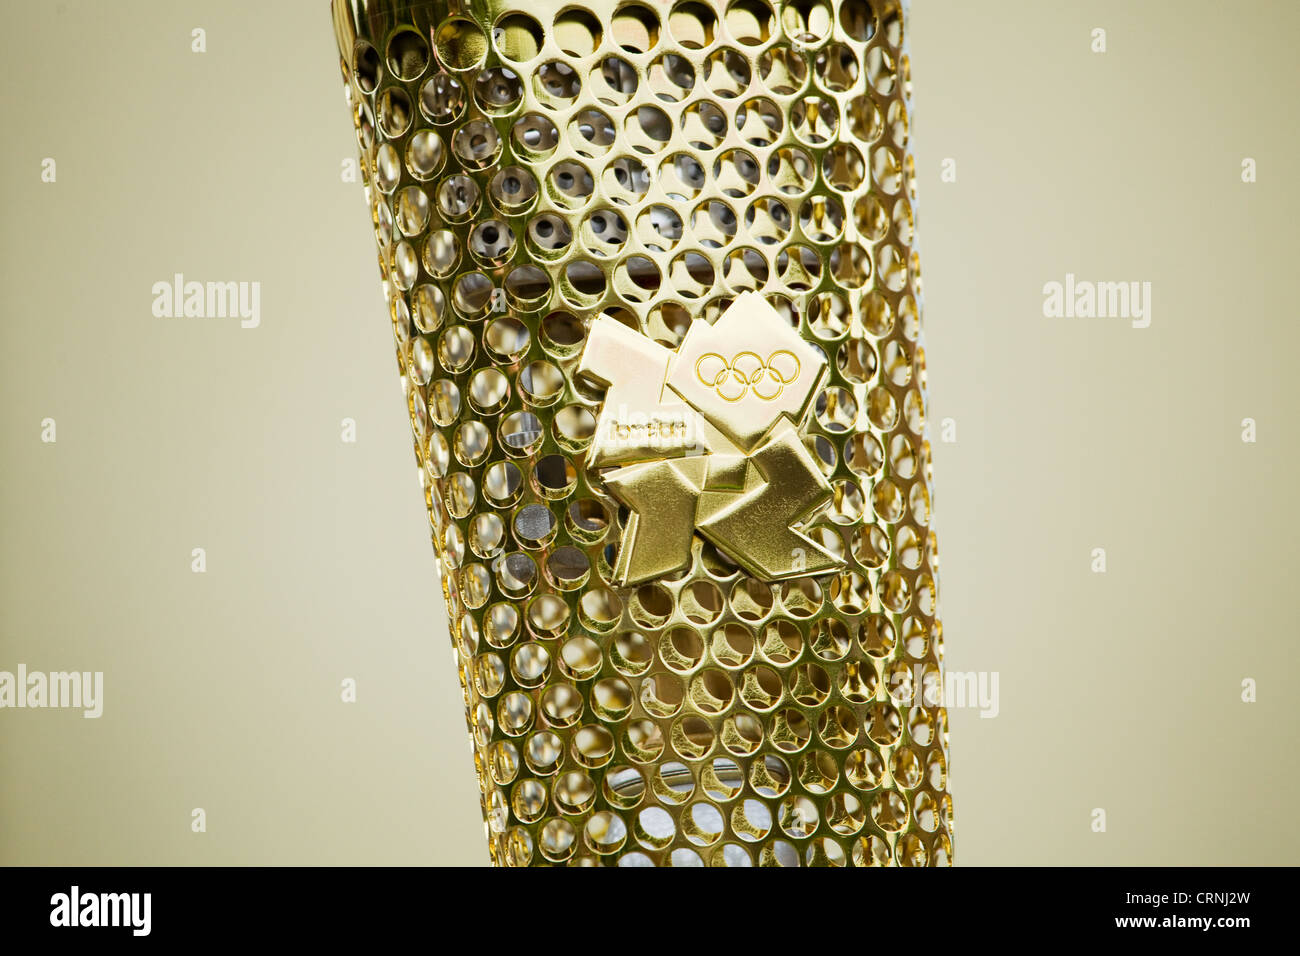 Une photographie du gros plan d'une torche olympique Londres 2012 montrant le logo 2012. Banque D'Images